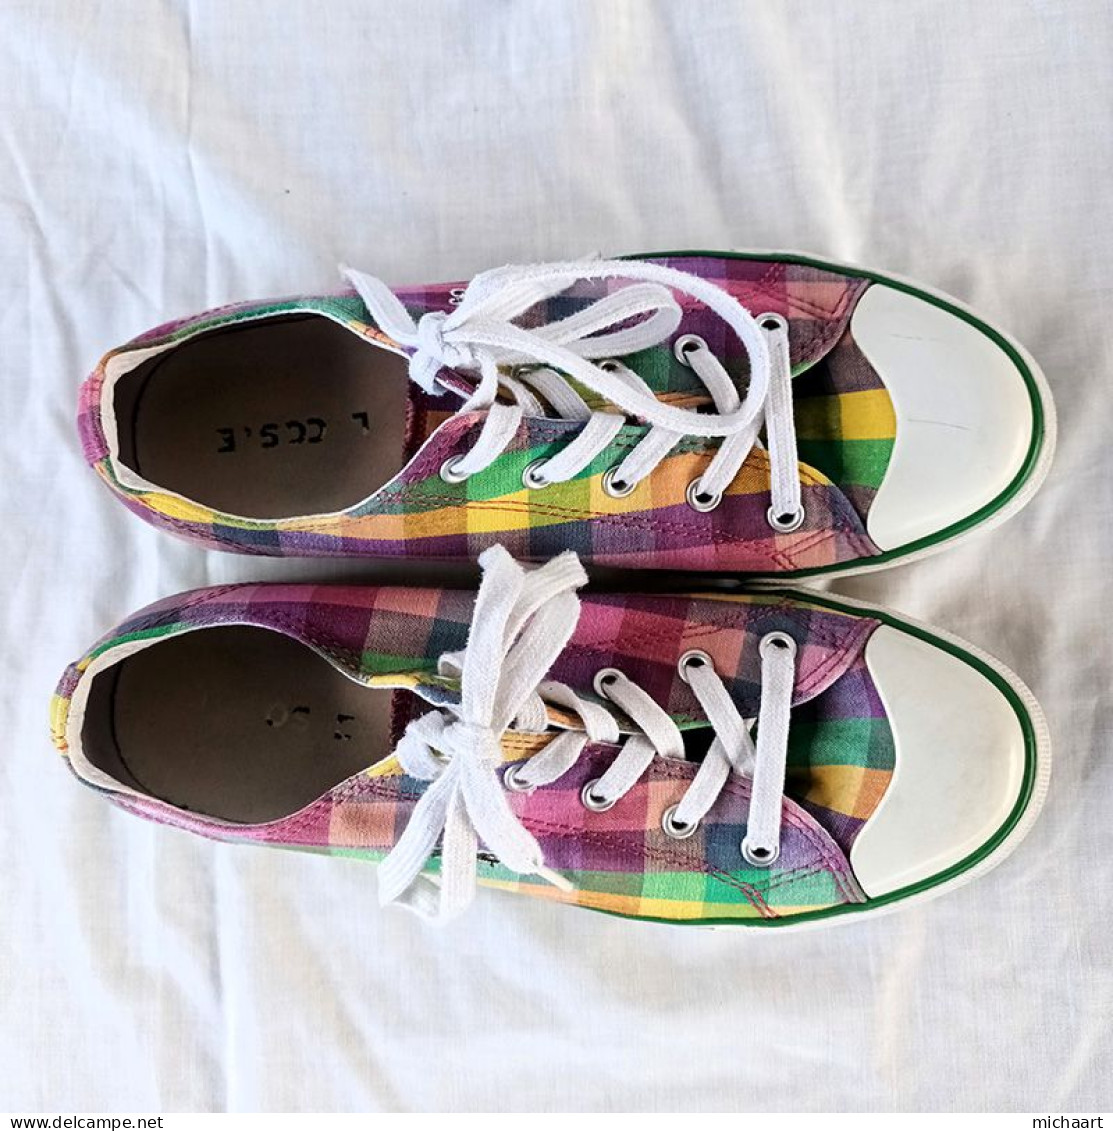 Lacoste Women Shoes Size 8 Multicolor L27 14 SRW TXT Low Top Sneaker 04012